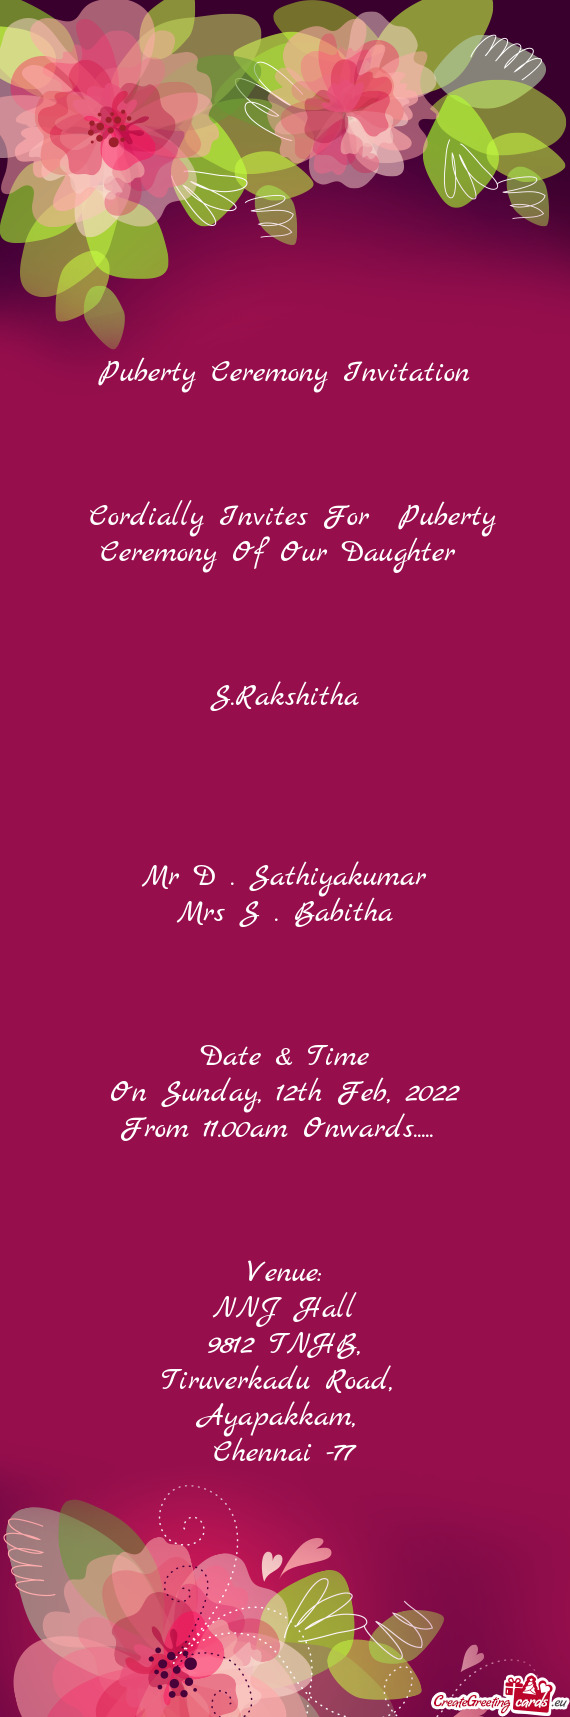 Mr D . Sathiyakumar